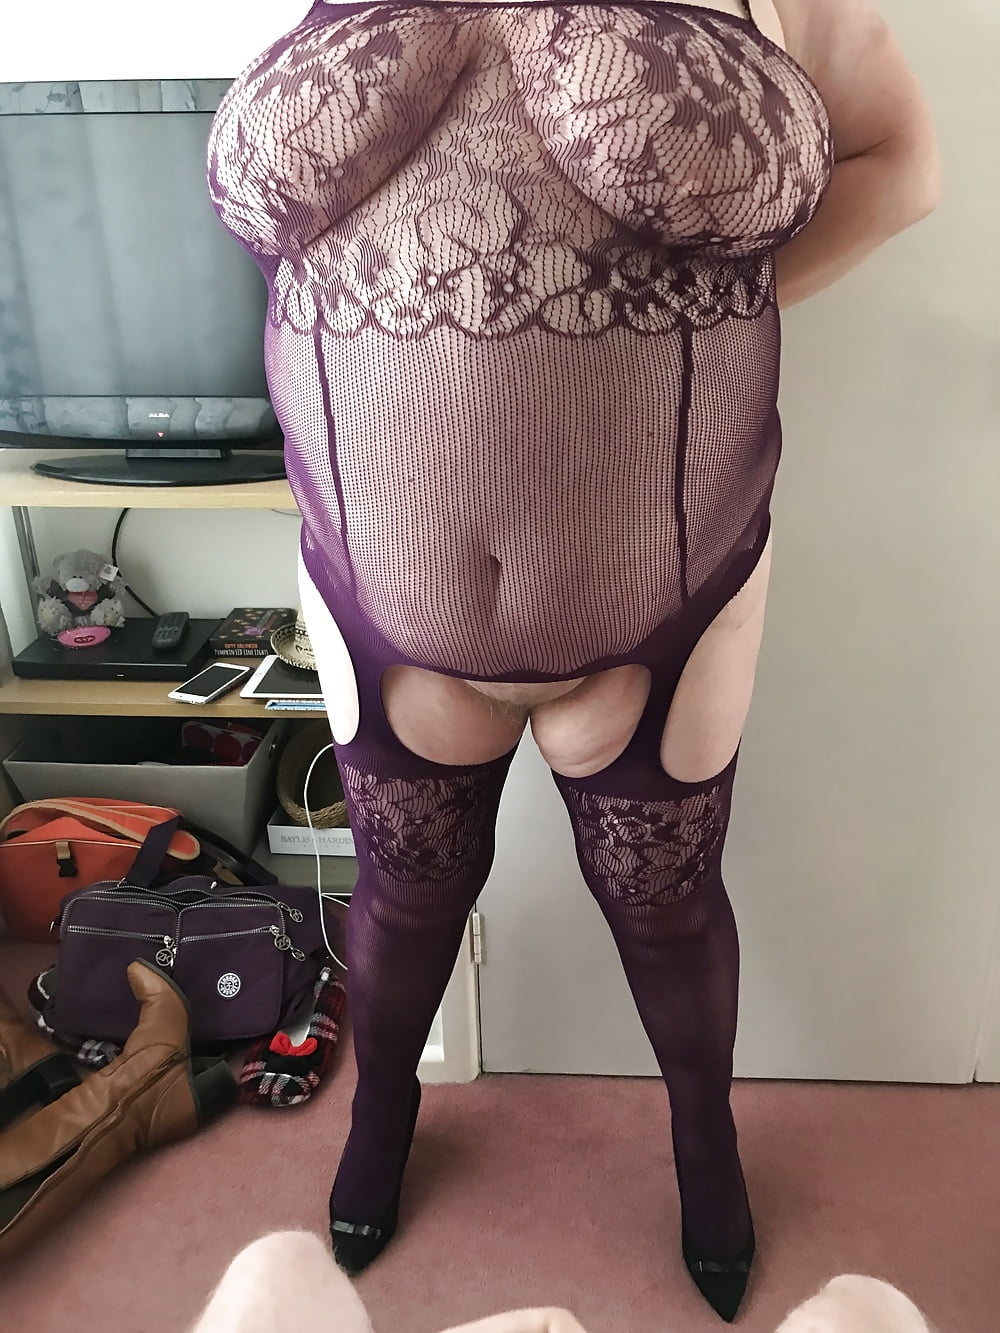 My BBW Wife in a body stocking (8/17)